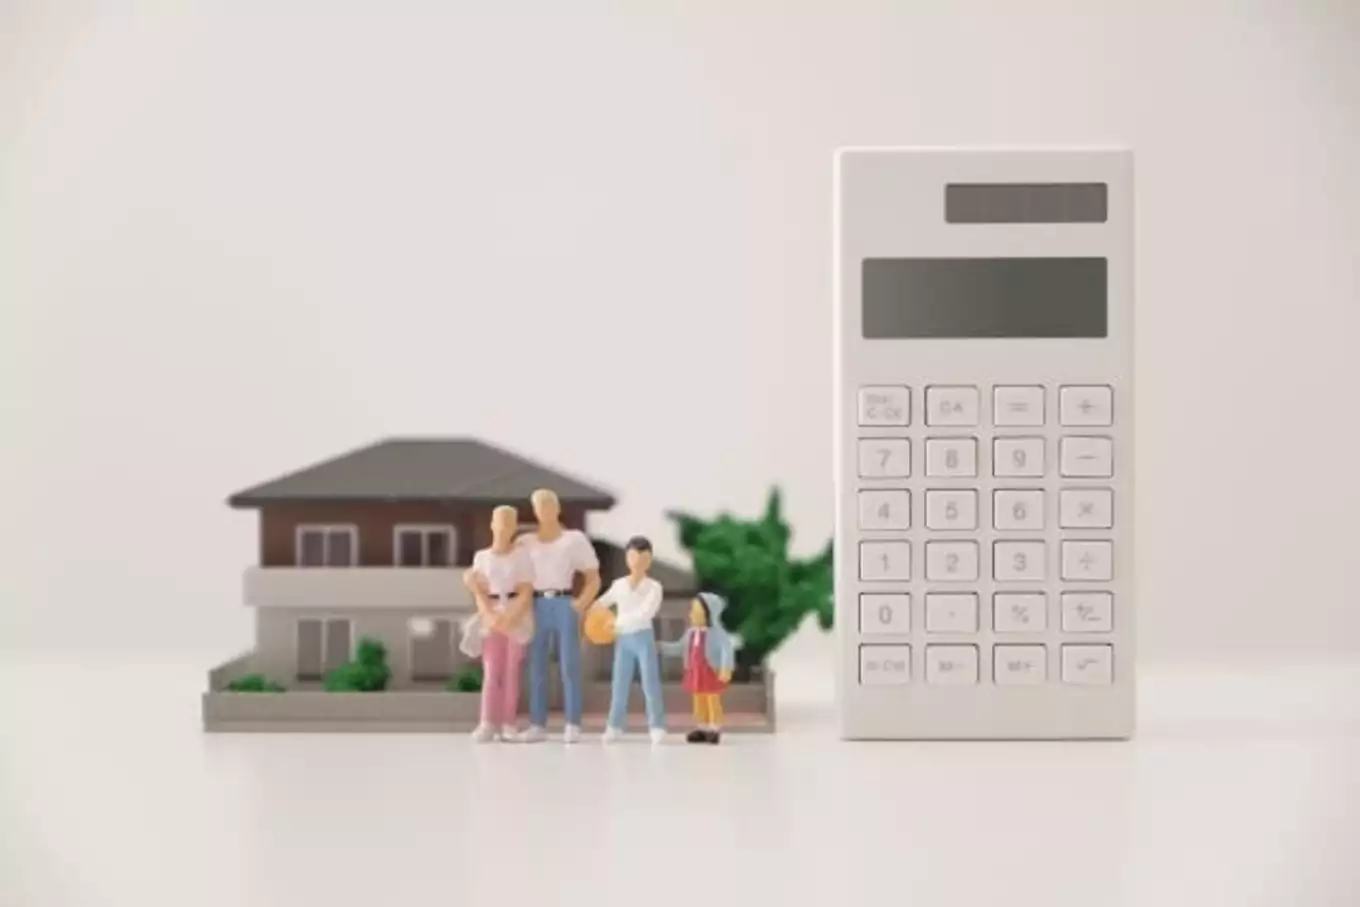 電卓と住宅模型と家族の人形